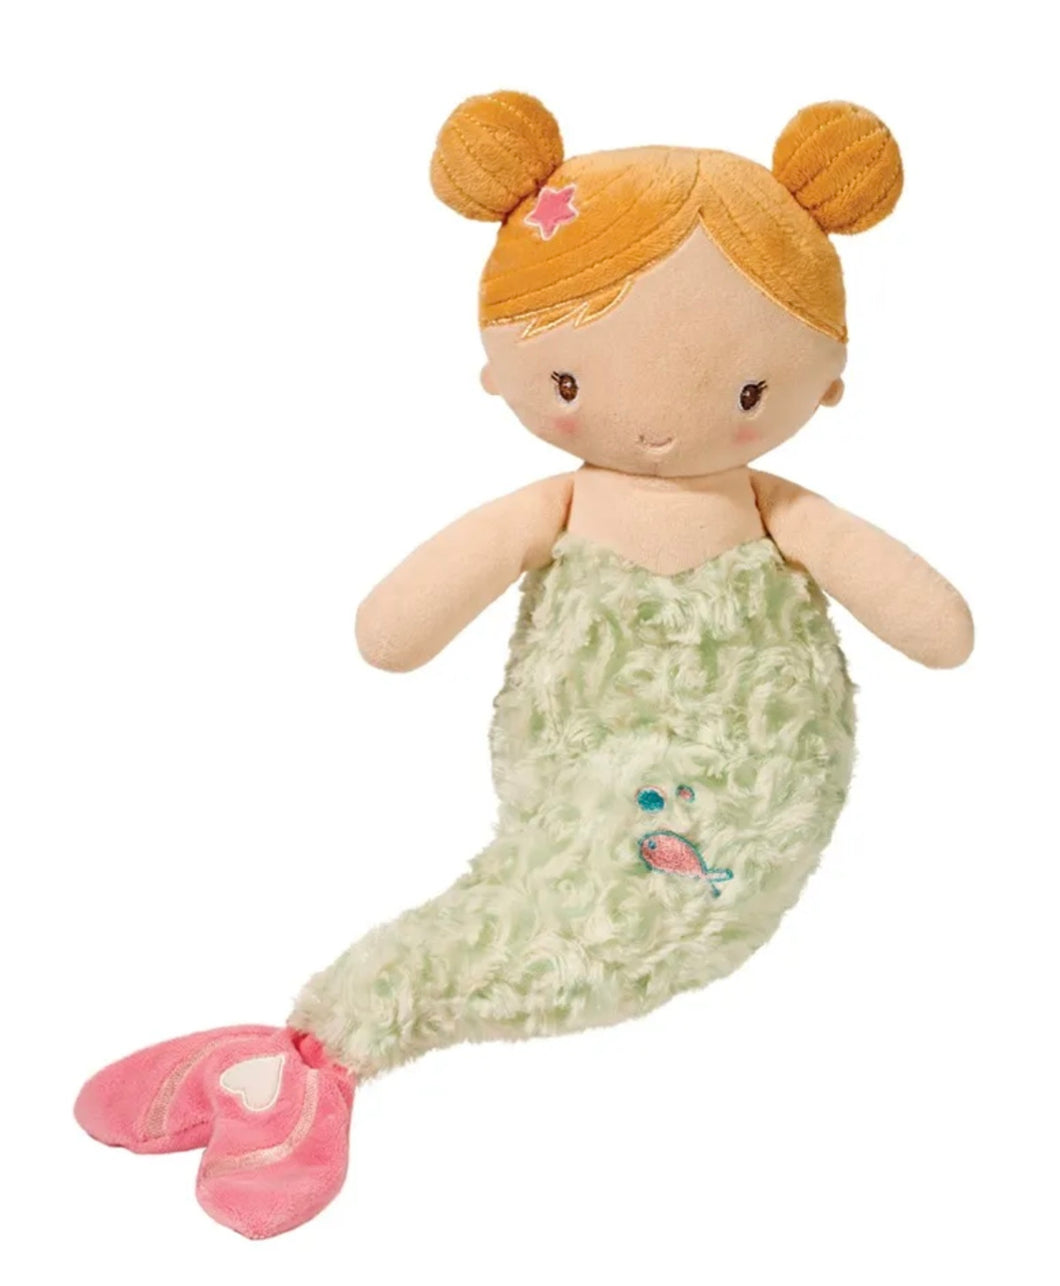 Mermaid Plush Baby Toy